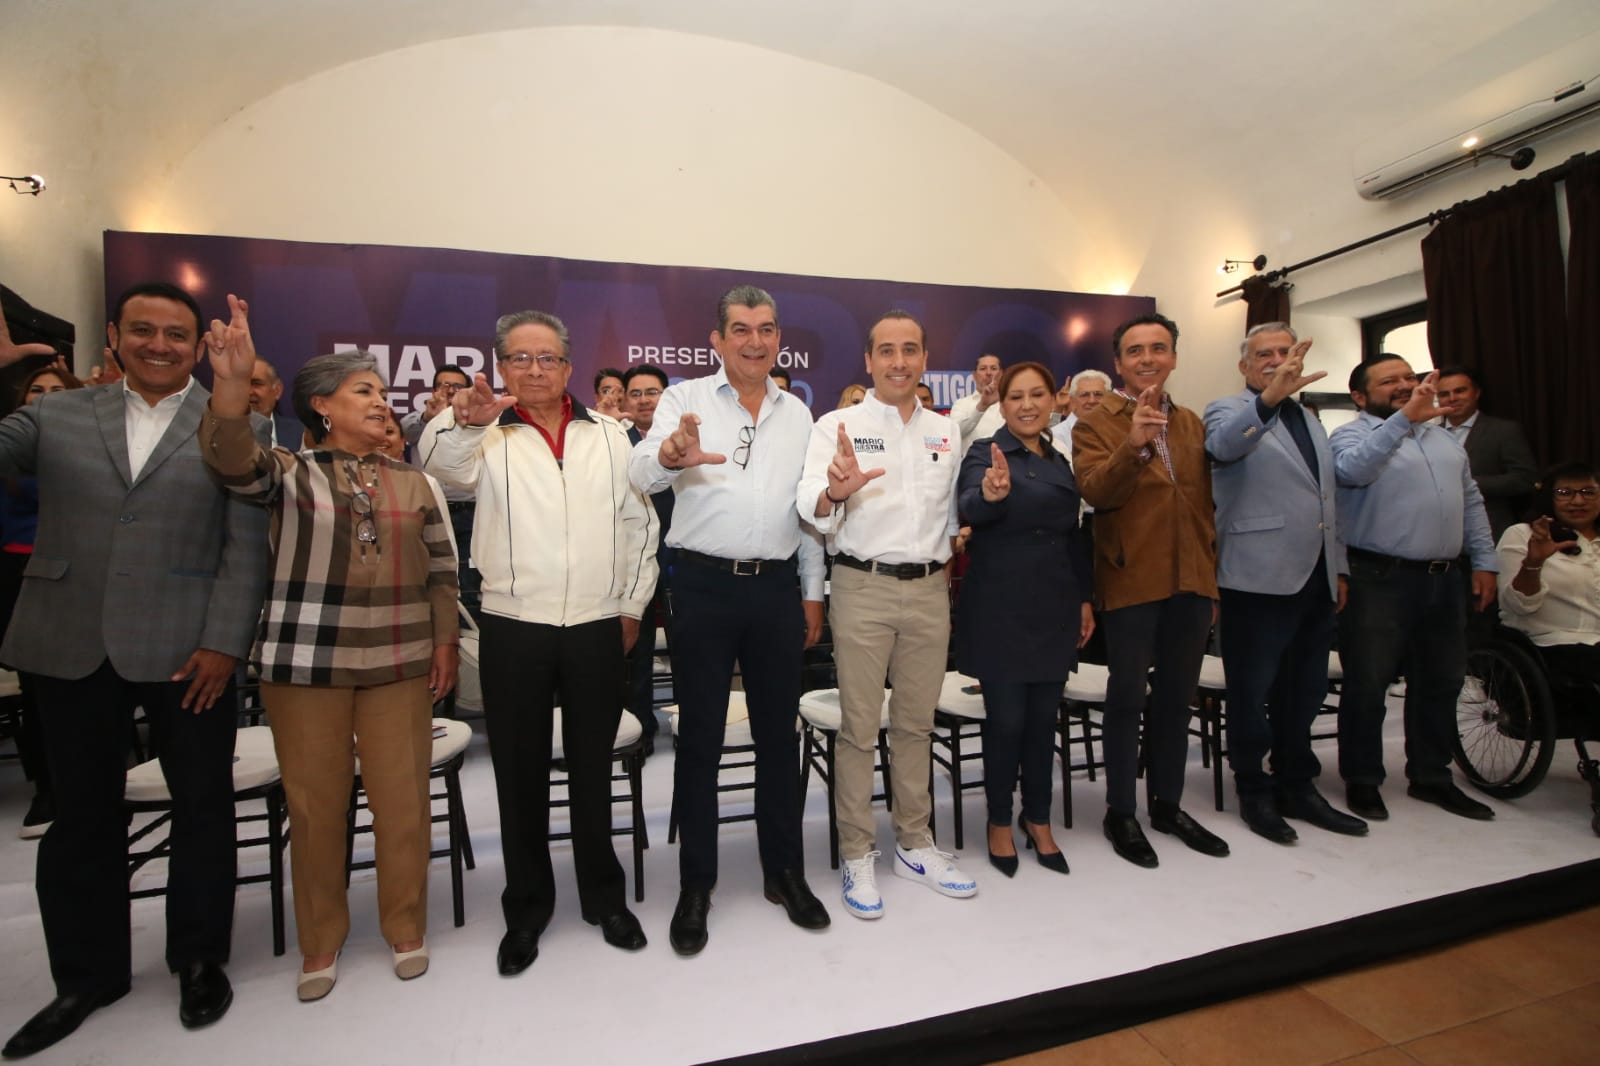 Presenta Mario Riestra al Equipo por Puebla, hacia la Presidencia Municipal